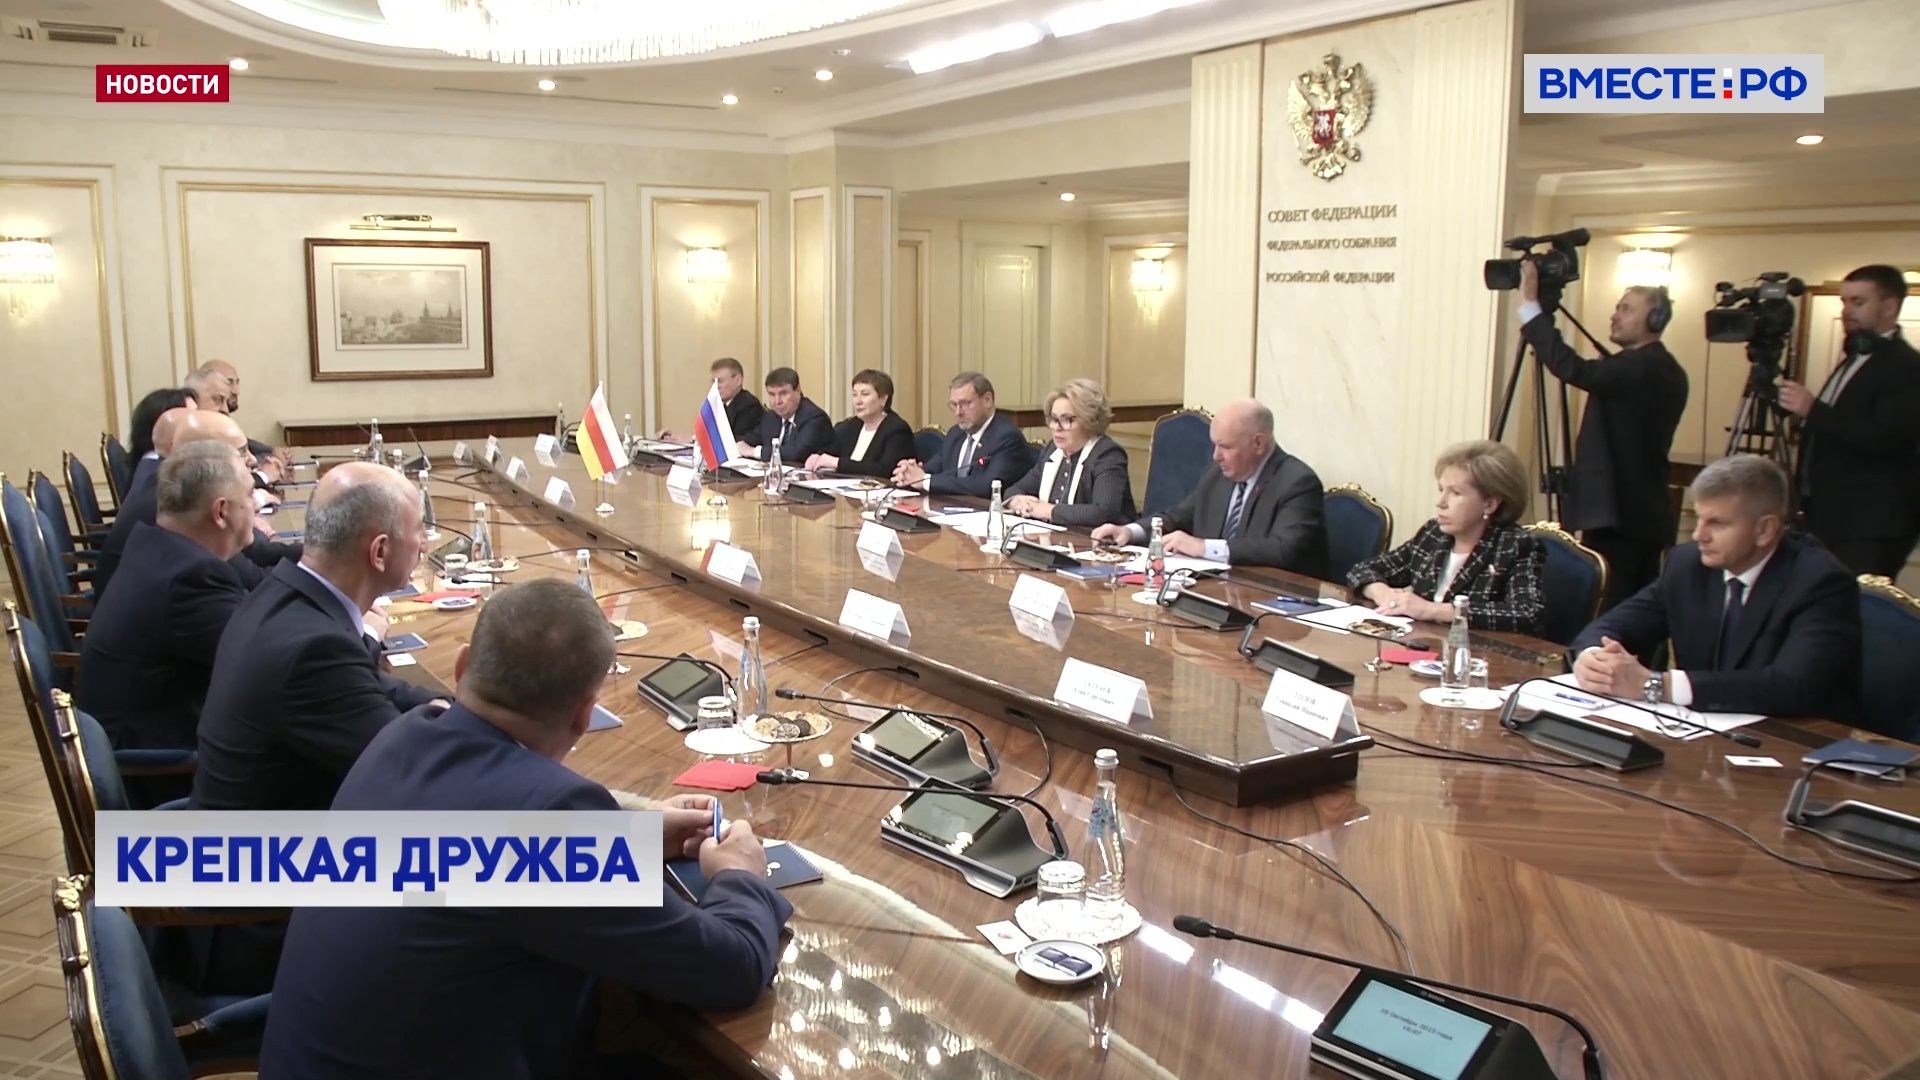 РФ и Южную Осетию связывает прочное сотрудничество, заявила Матвиенко